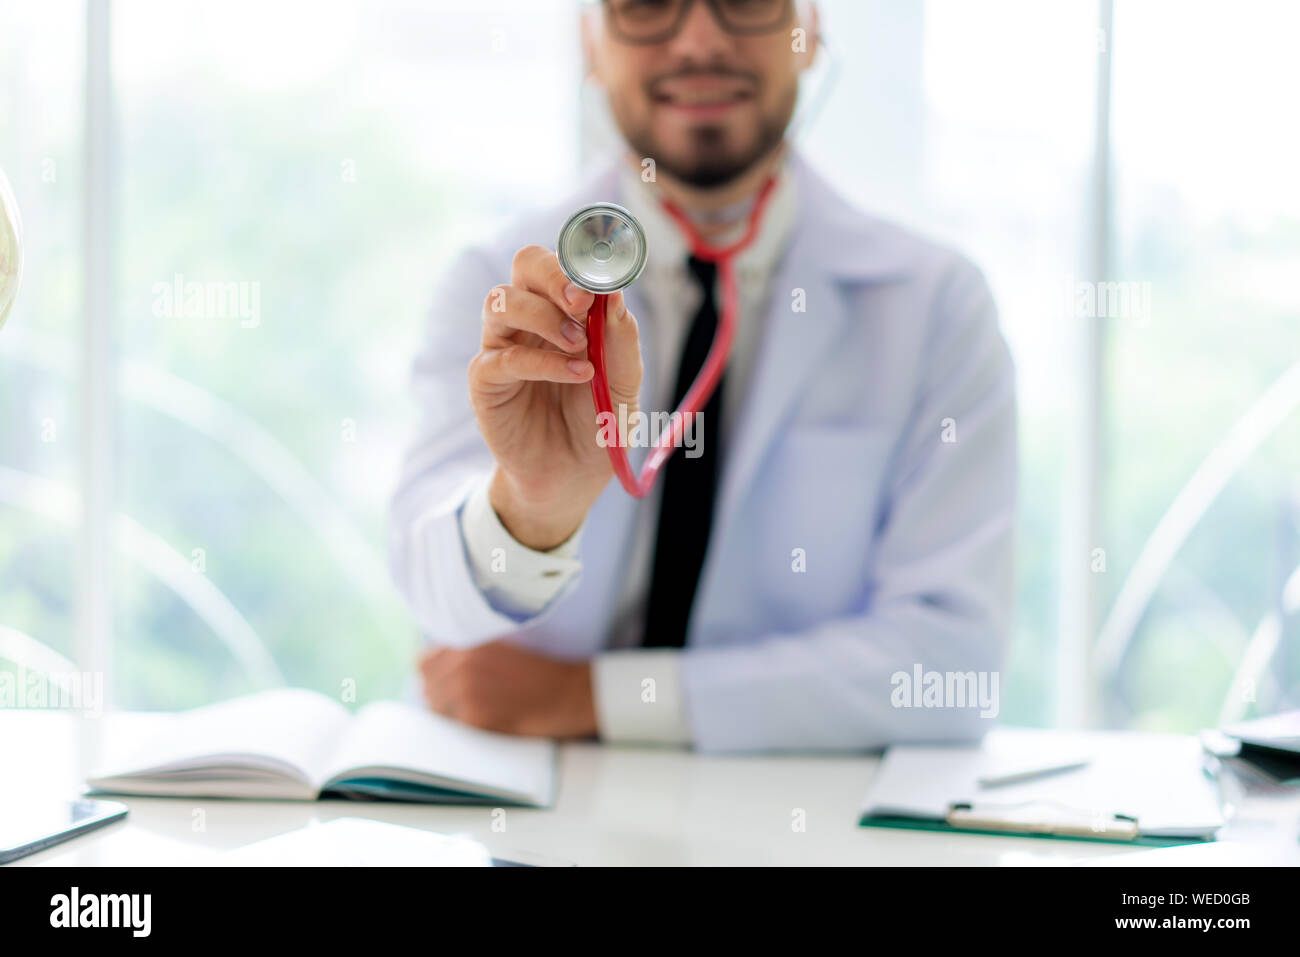 L'uomo medico con lo stetoscopio in mano. Egli sorride dolcemente per i pazienti che vengono diagnosticati. Foto Stock